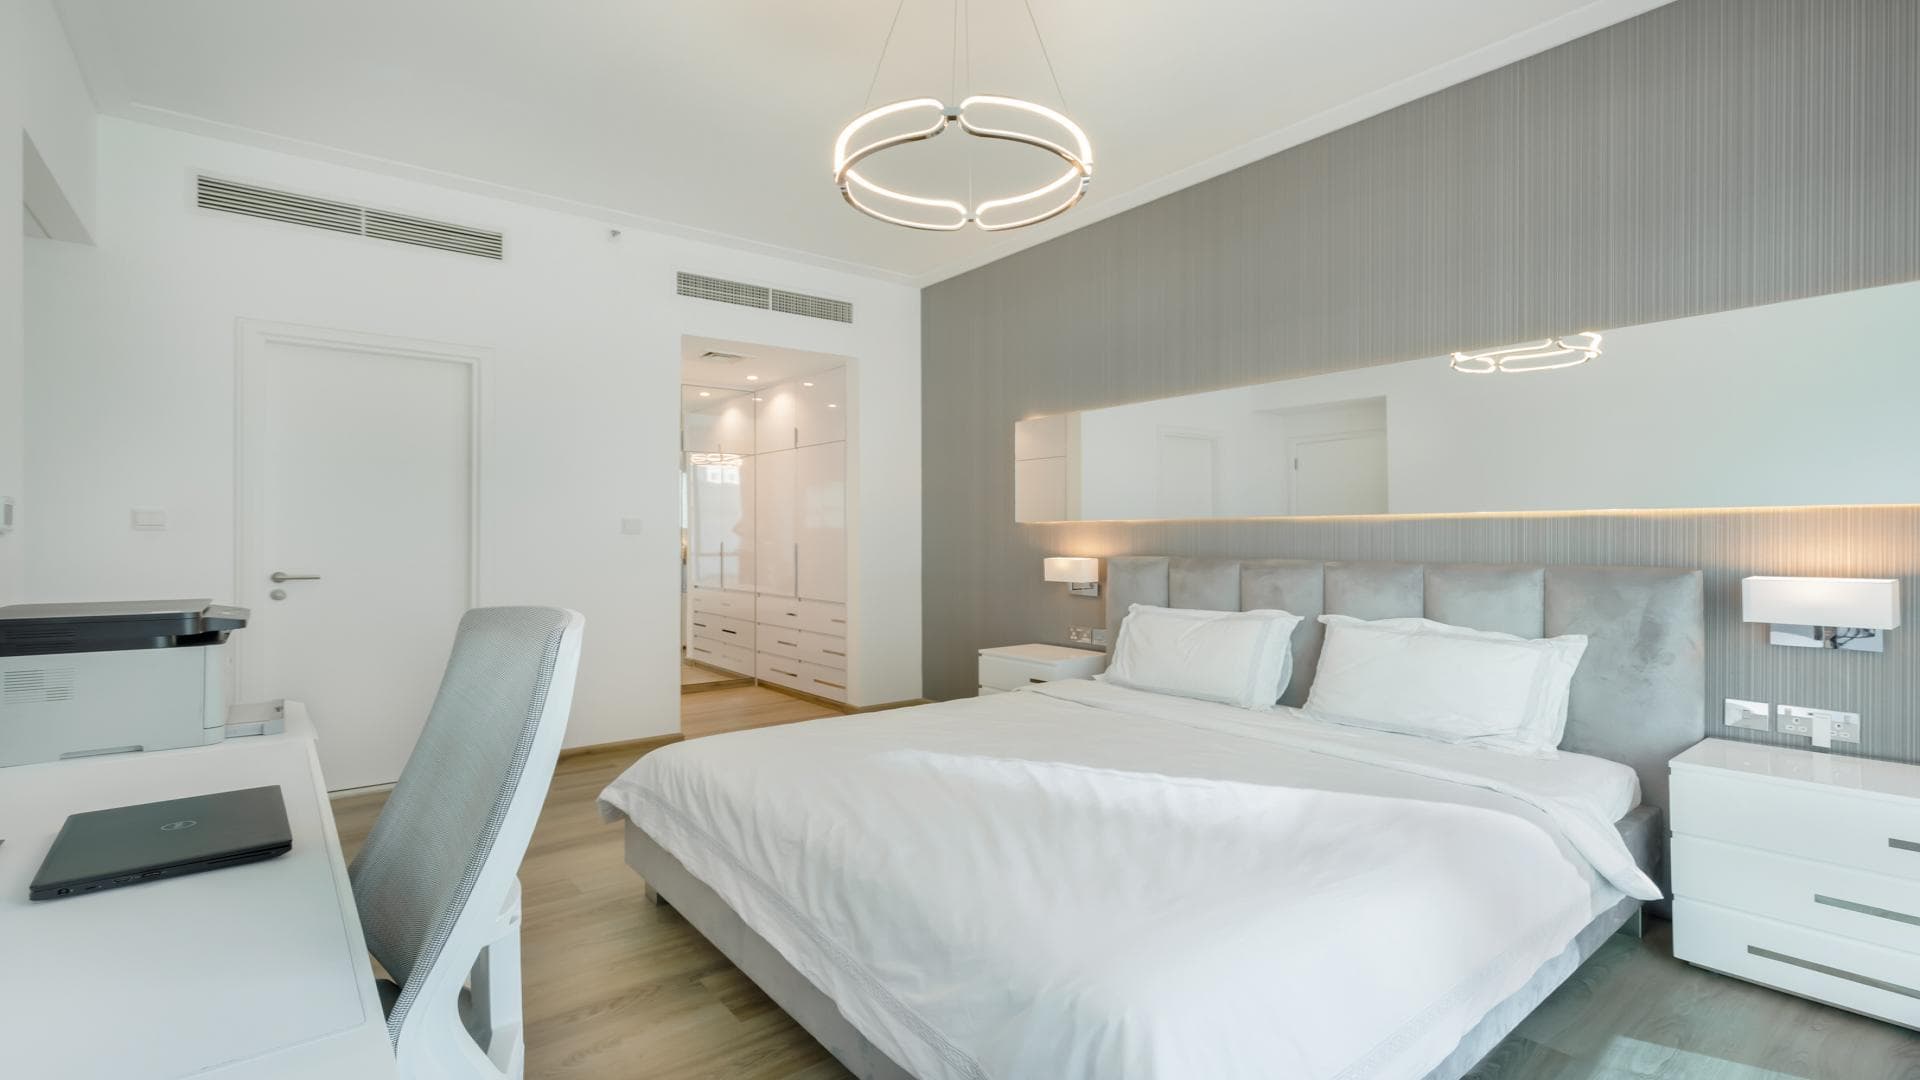 1 Bedroom Apartment For Rent Marina Promenade Lp19314 Ab0a29153f4d180.jpg